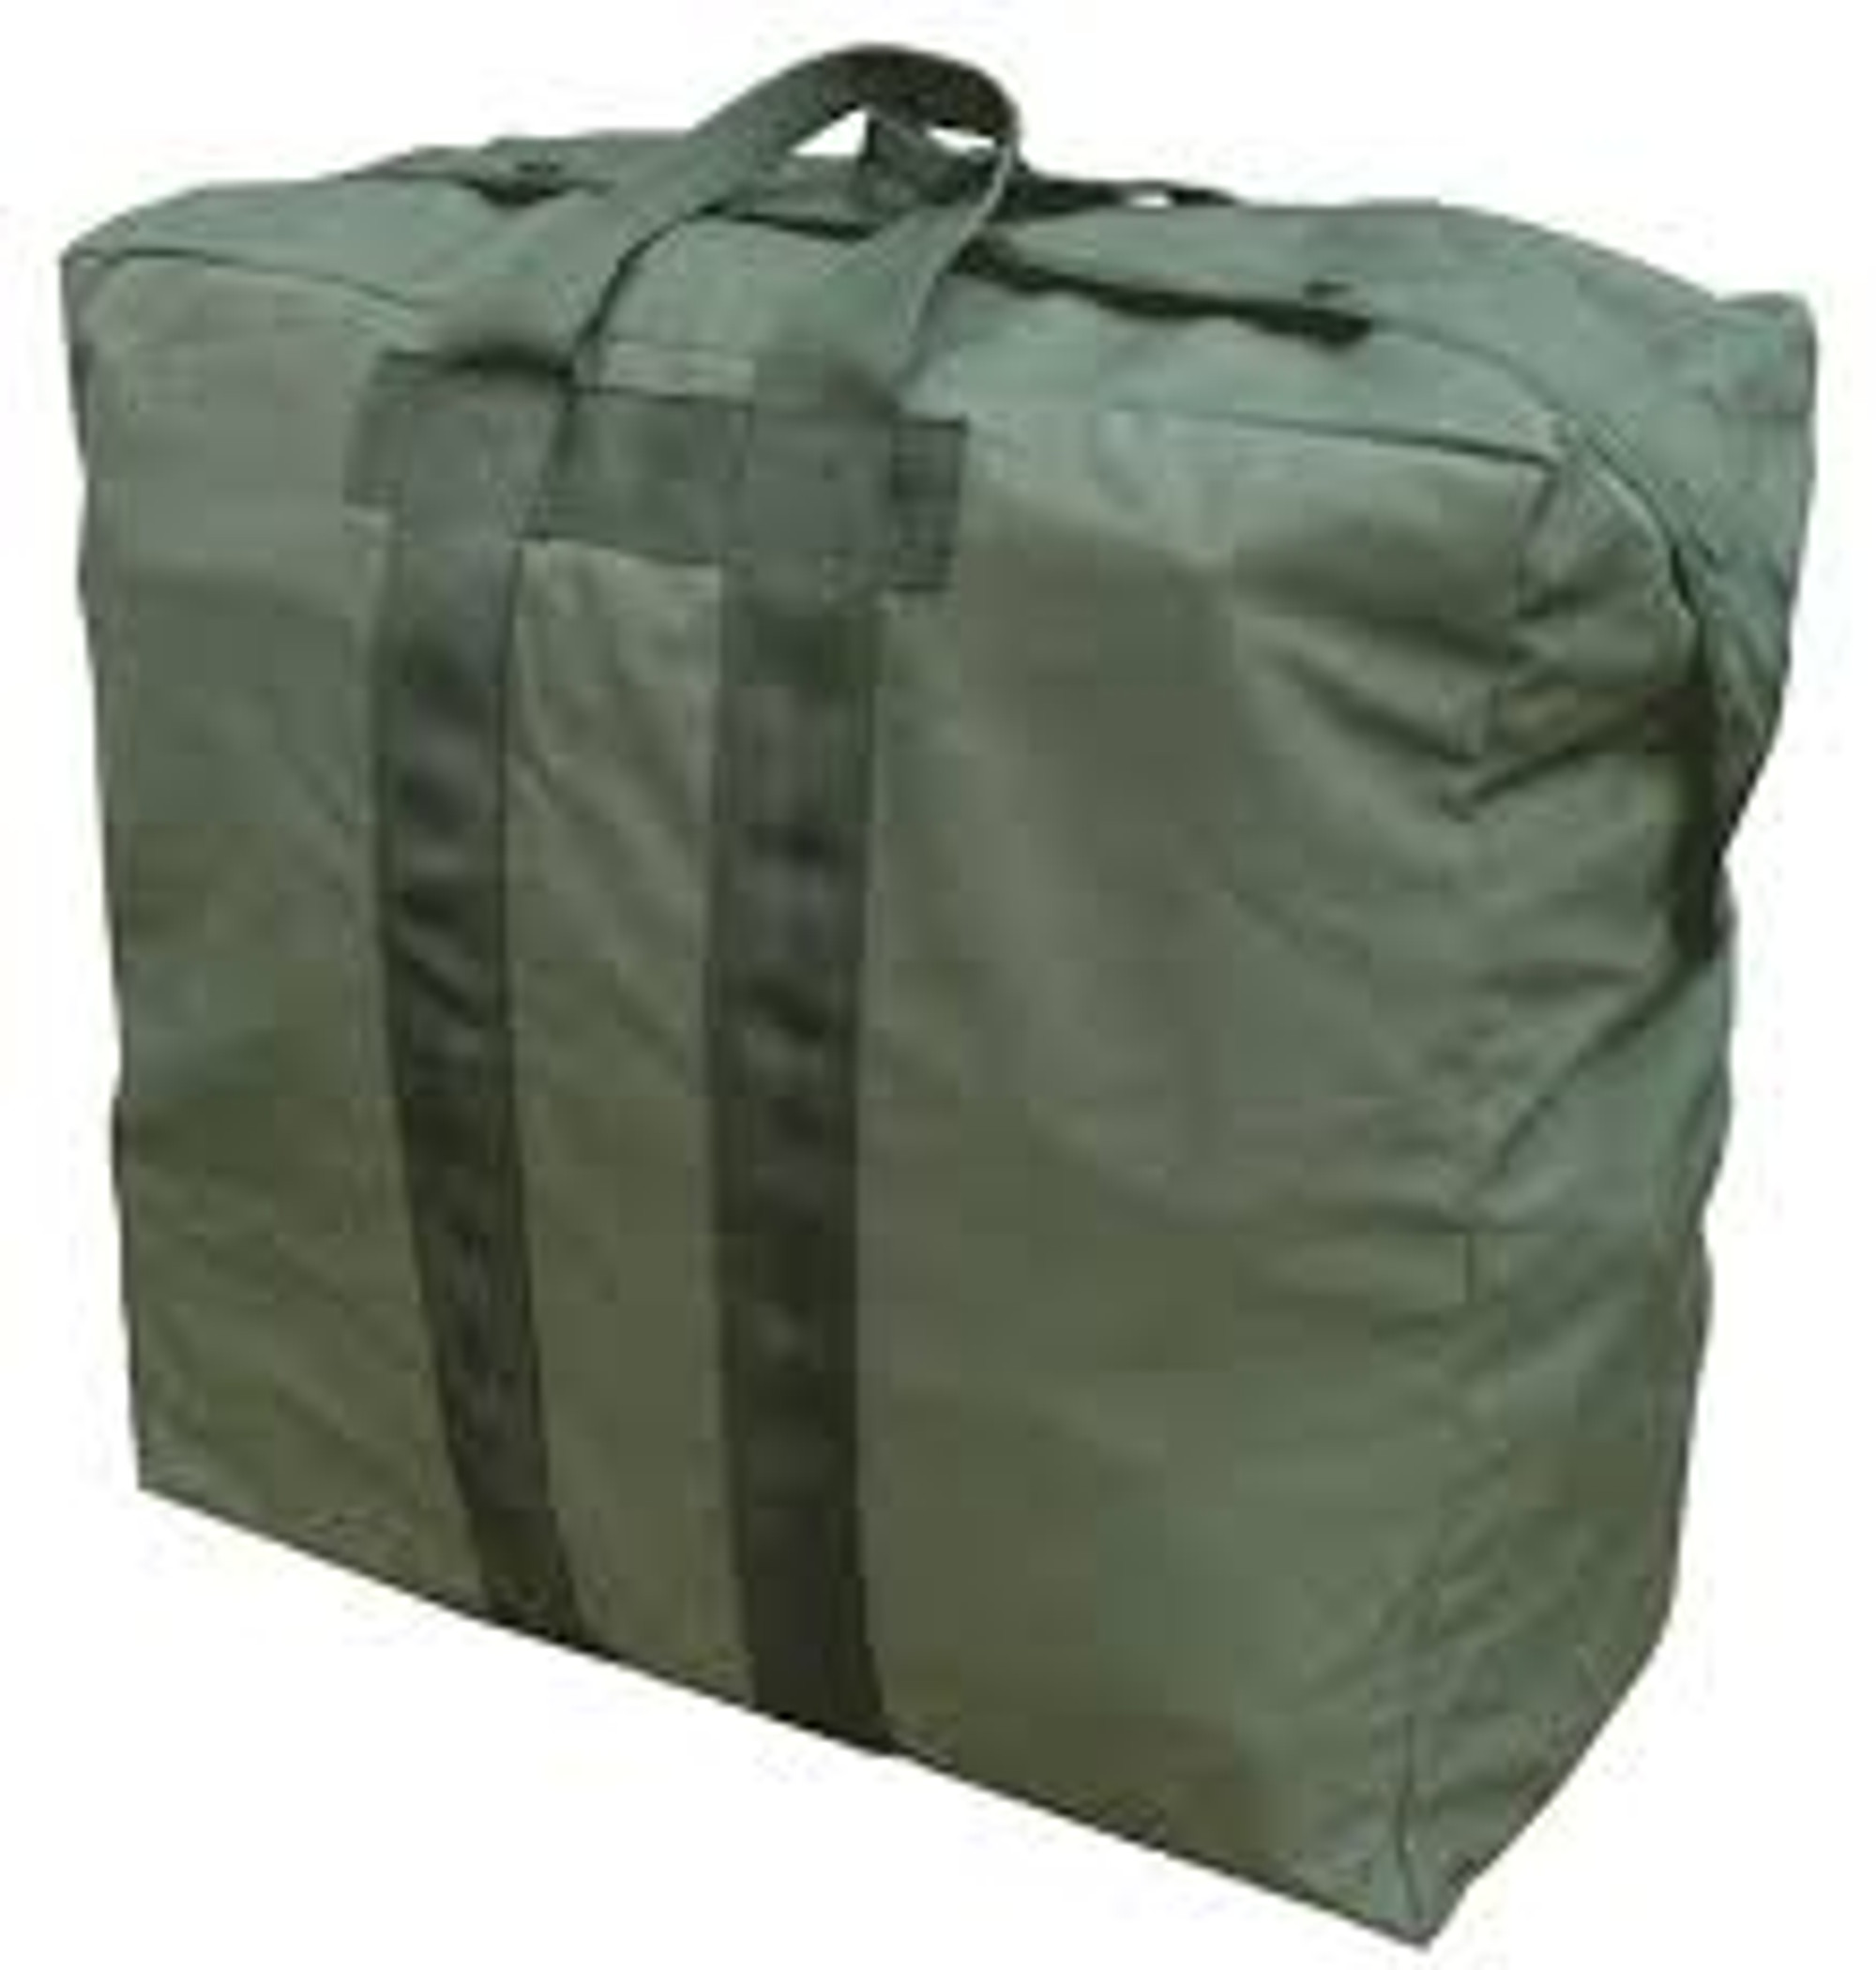 U.S. Armed Forces Flyer's Kit Bag